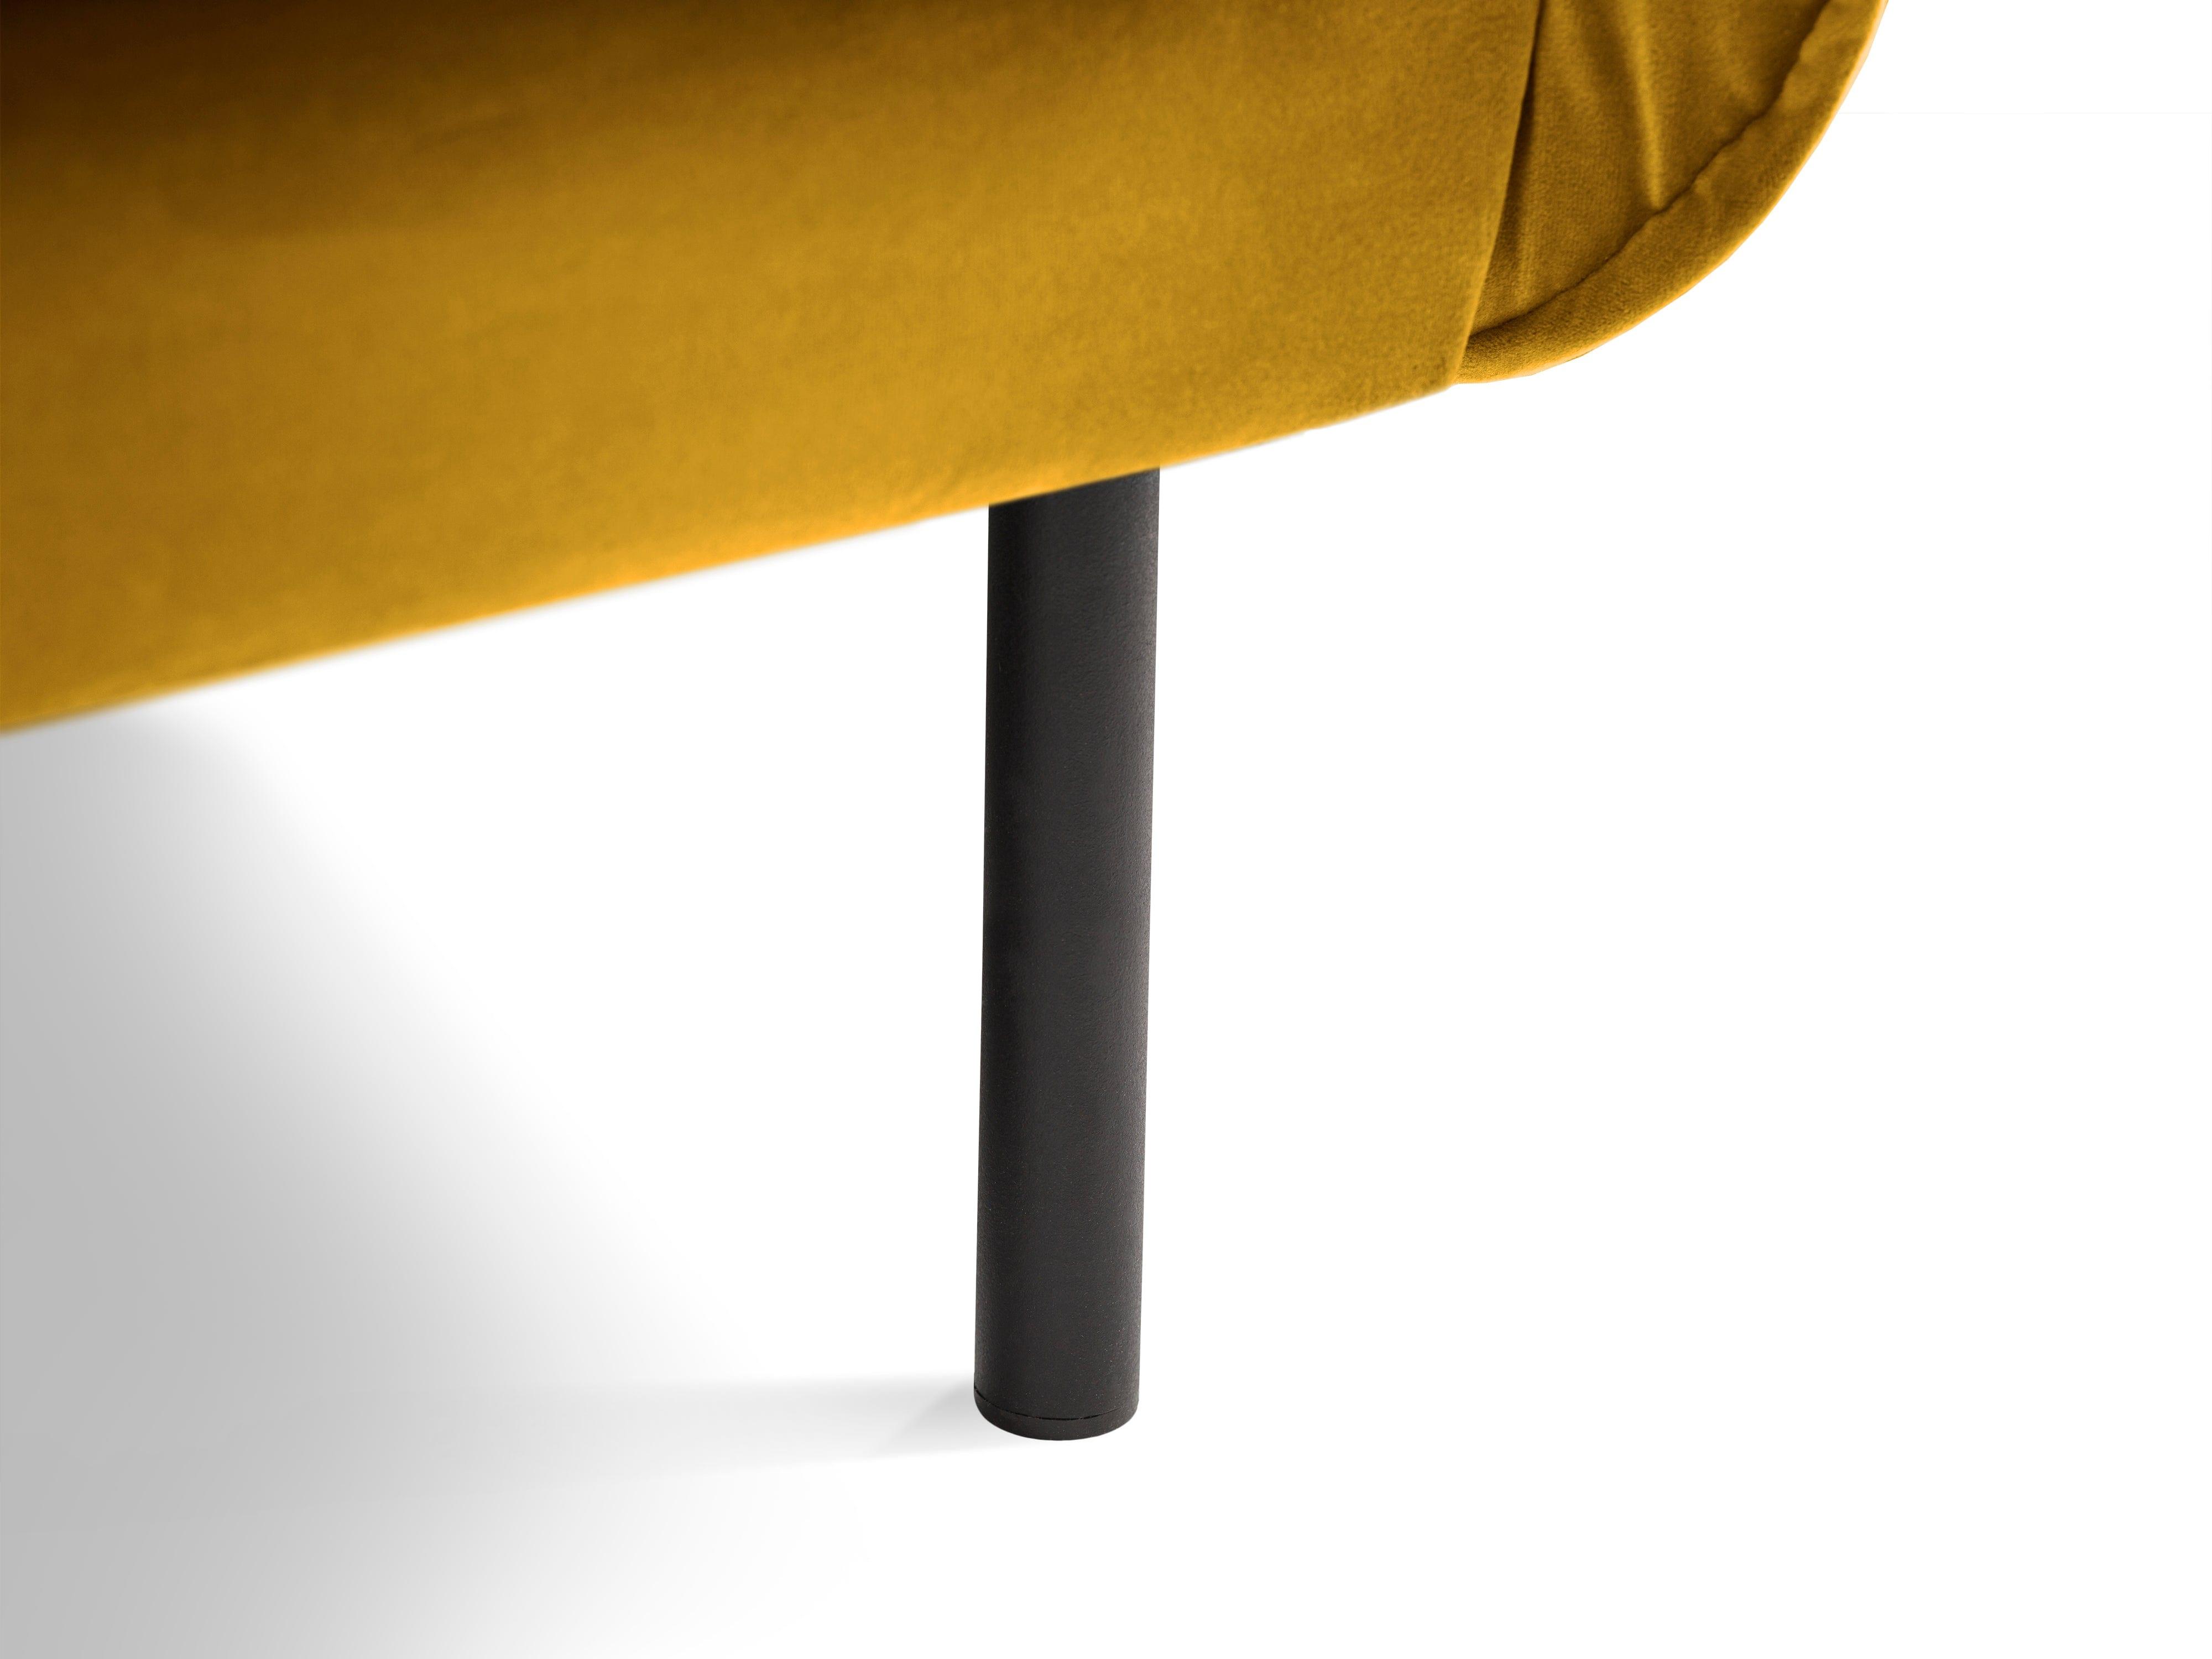 Sofa aksamitna 4-osobowa VIENNA żółty z czarną podstawą Cosmopolitan Design    Eye on Design